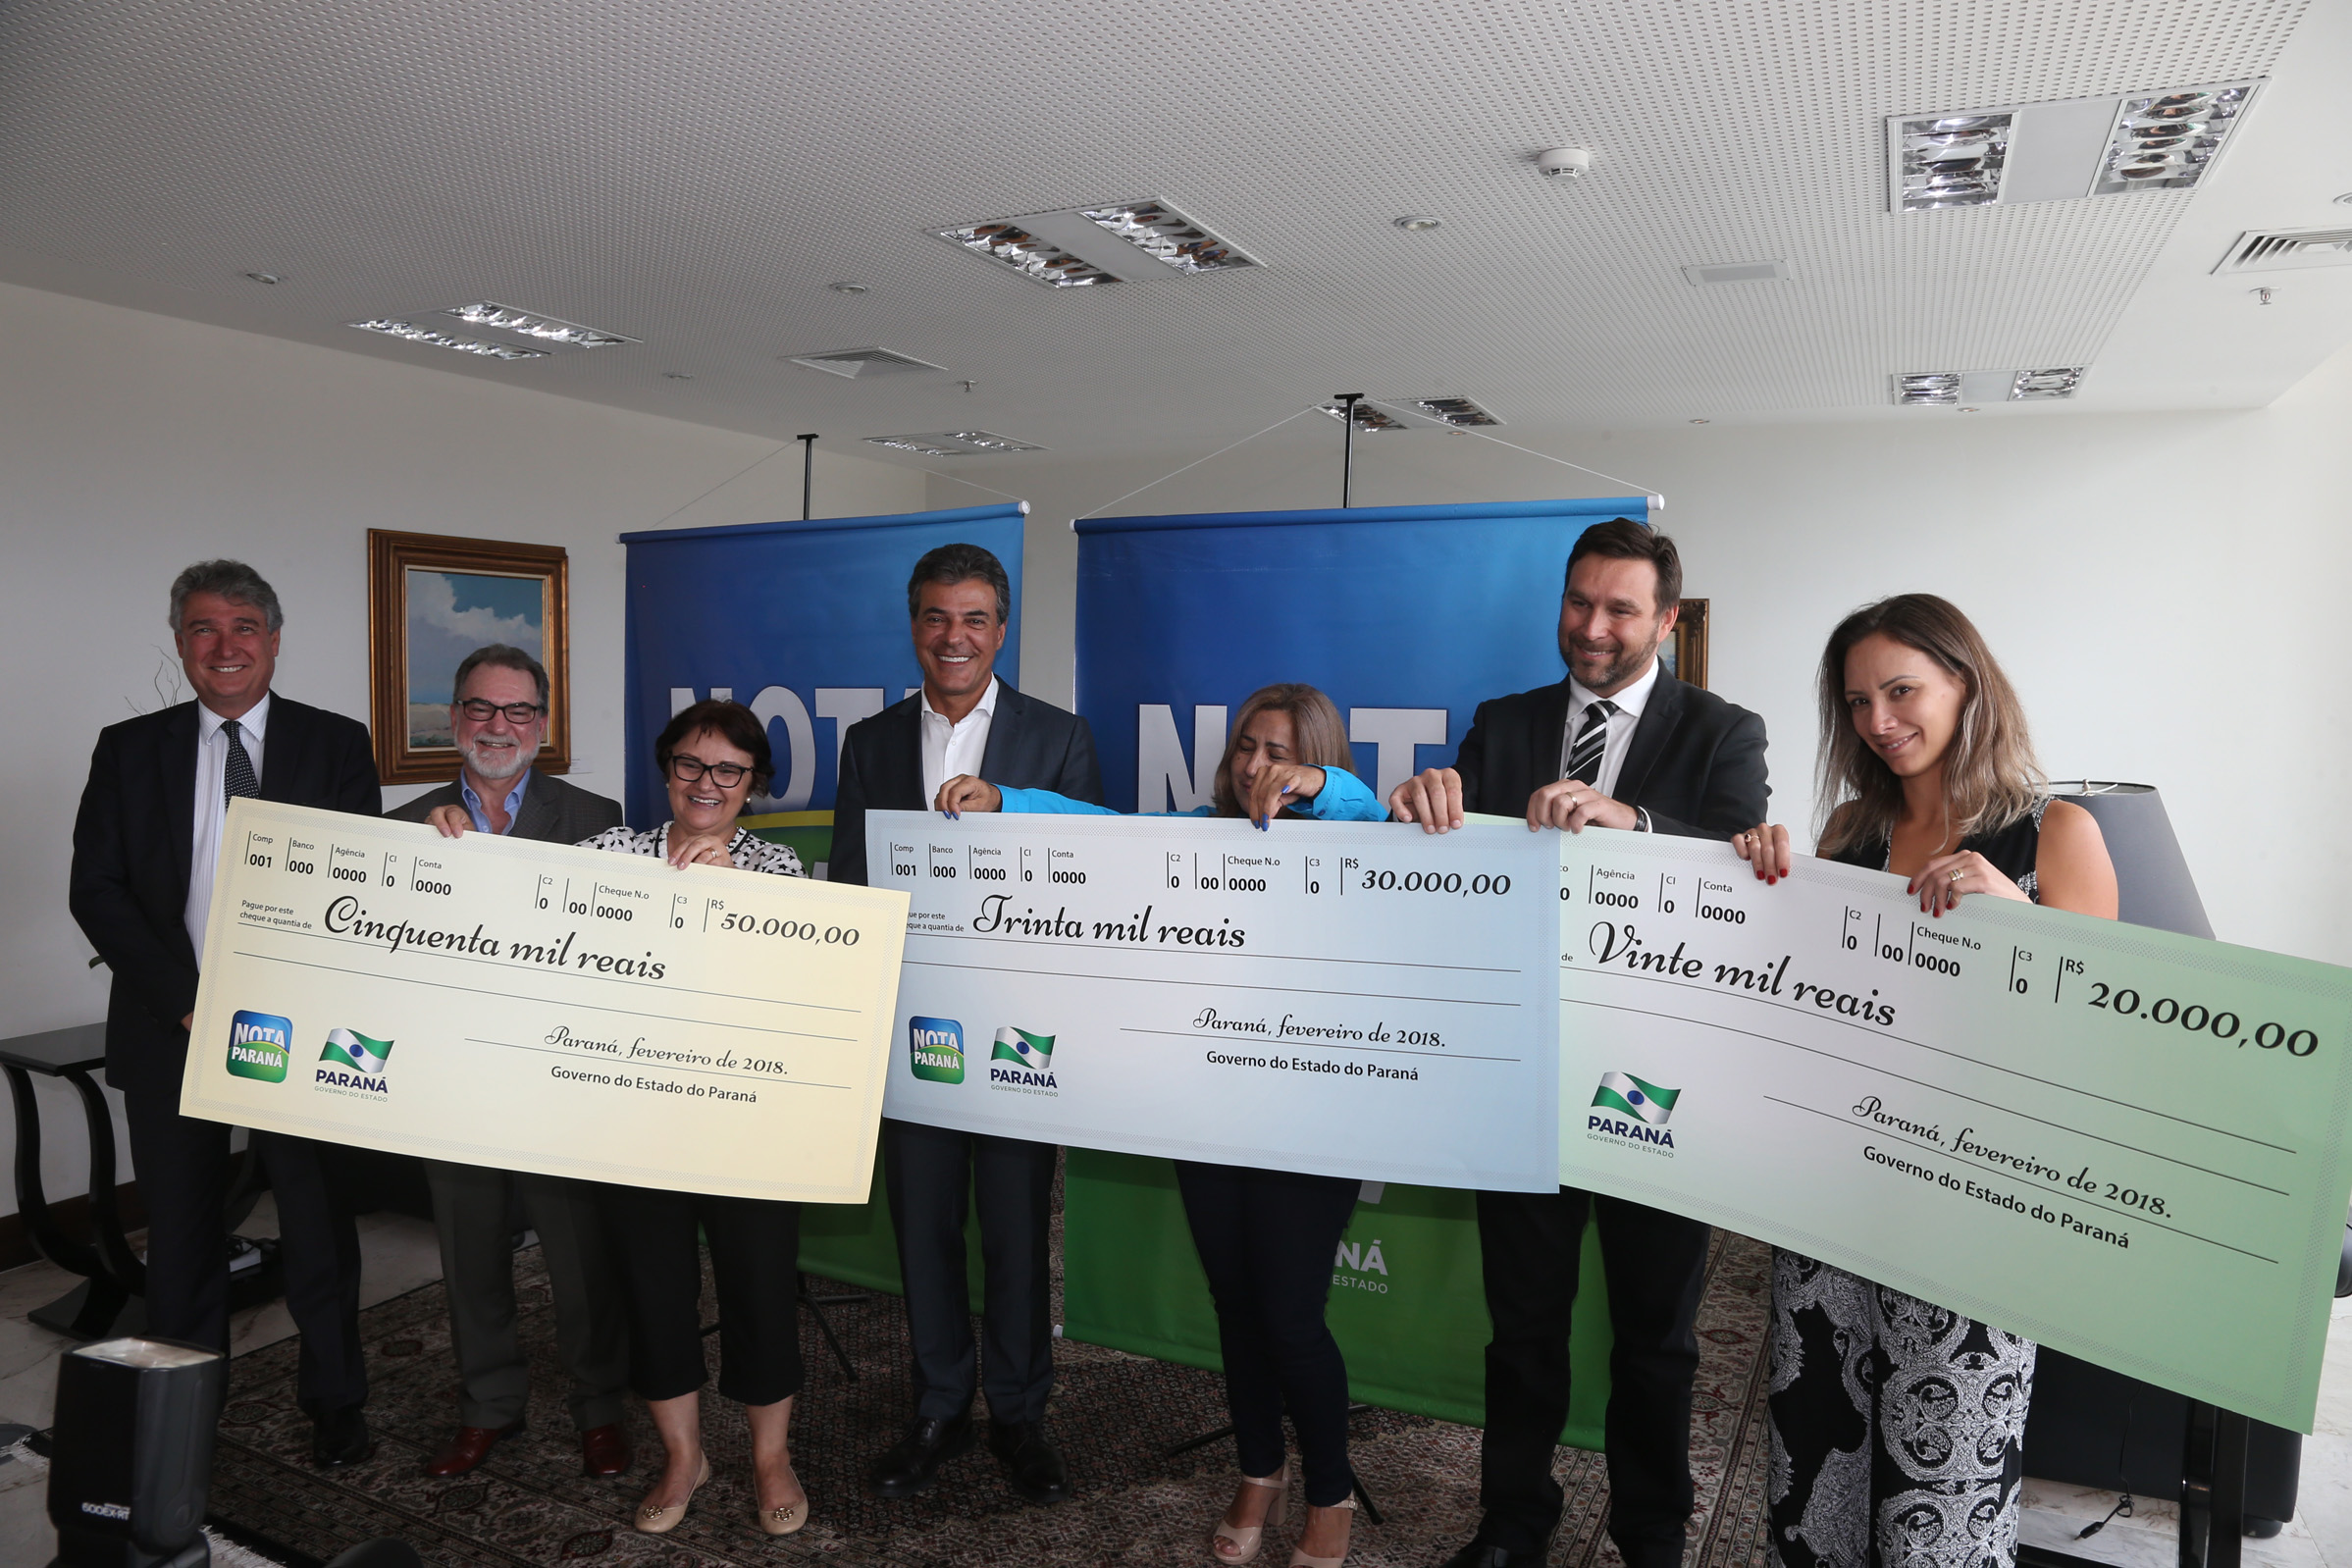  Secretária, professora e médica ganham os três maiores prêmios na Nota Paraná de fevereiro